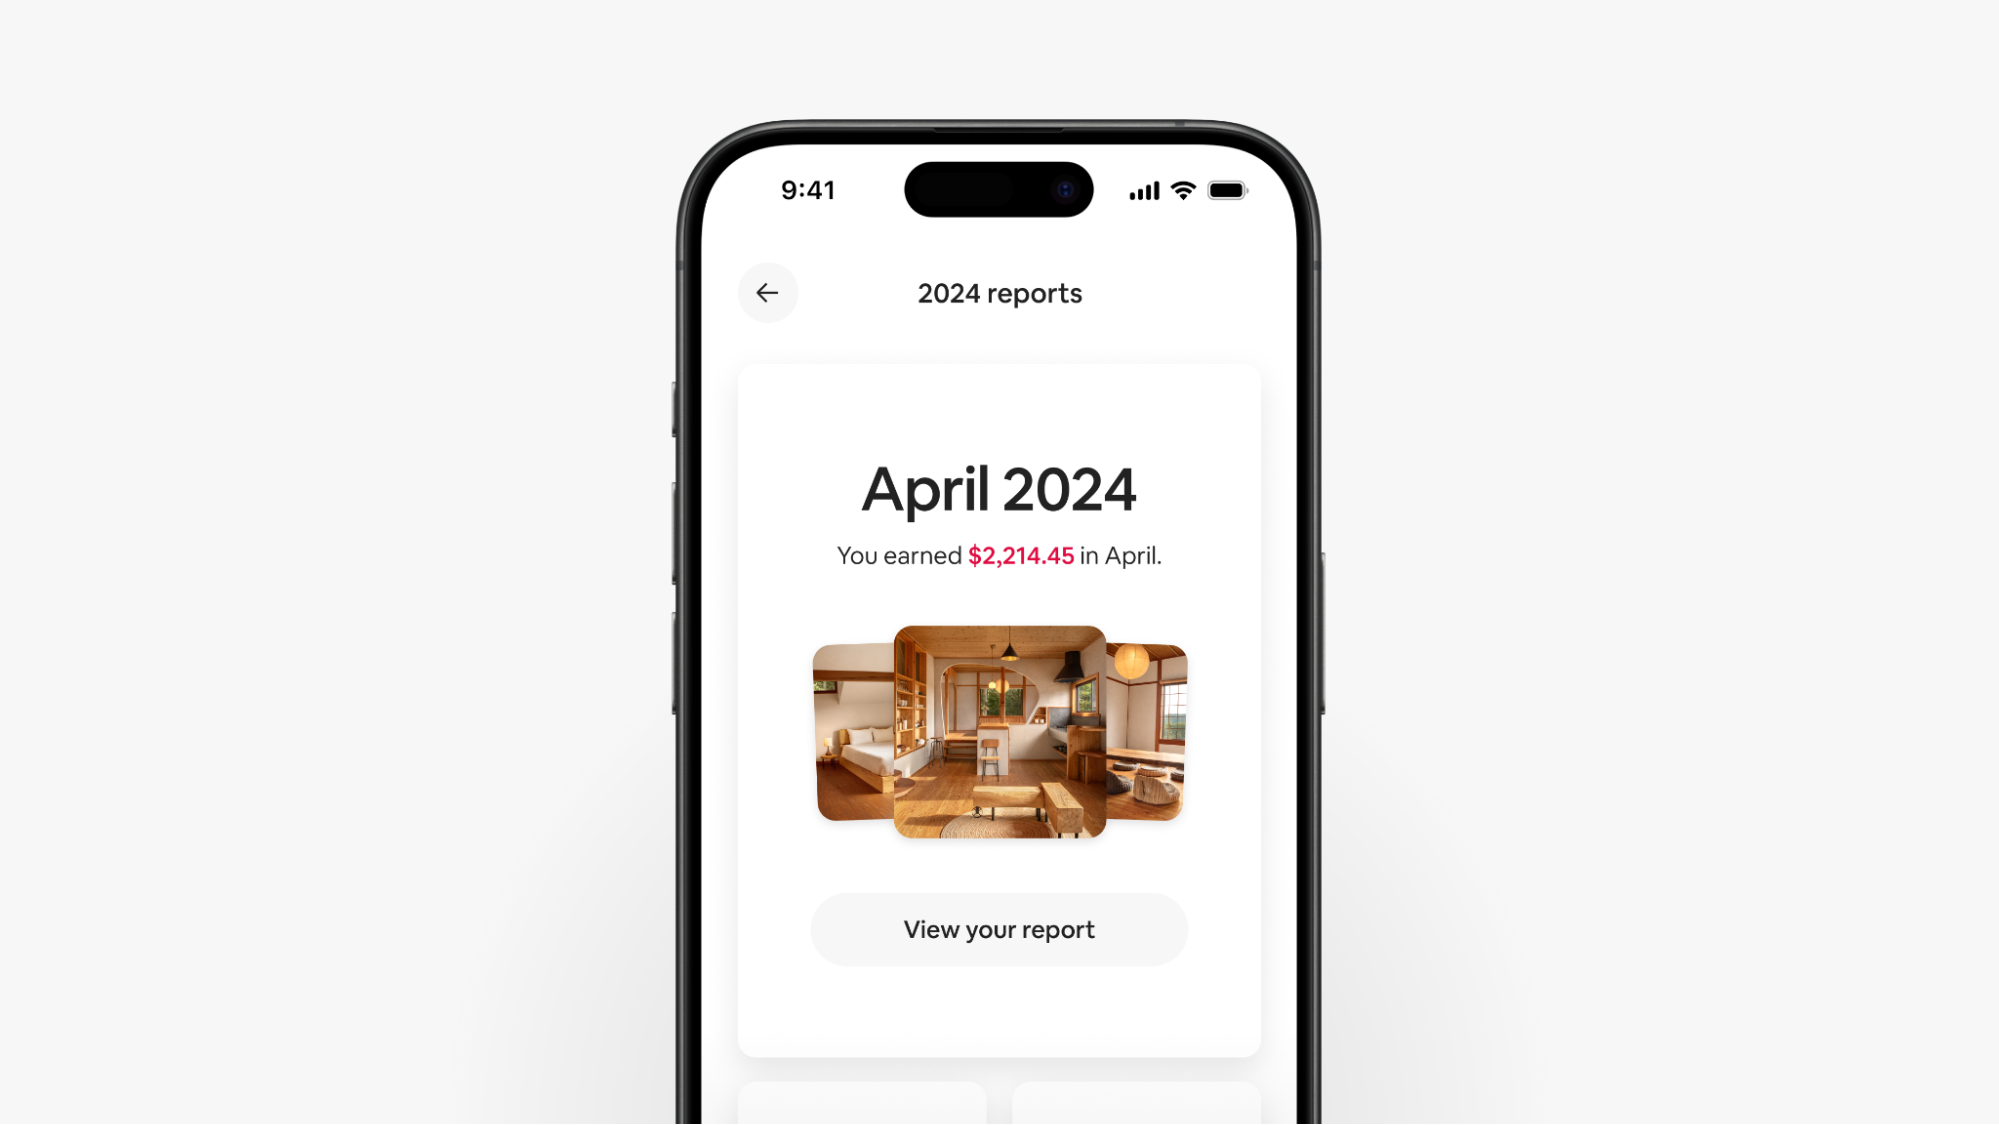 Una schermata nell'hub dei report dell'app mobile riporta il testo "Hai guadagnato 2.214,45 USD ad aprile" sopra un pulsante per consultare il tuo report.